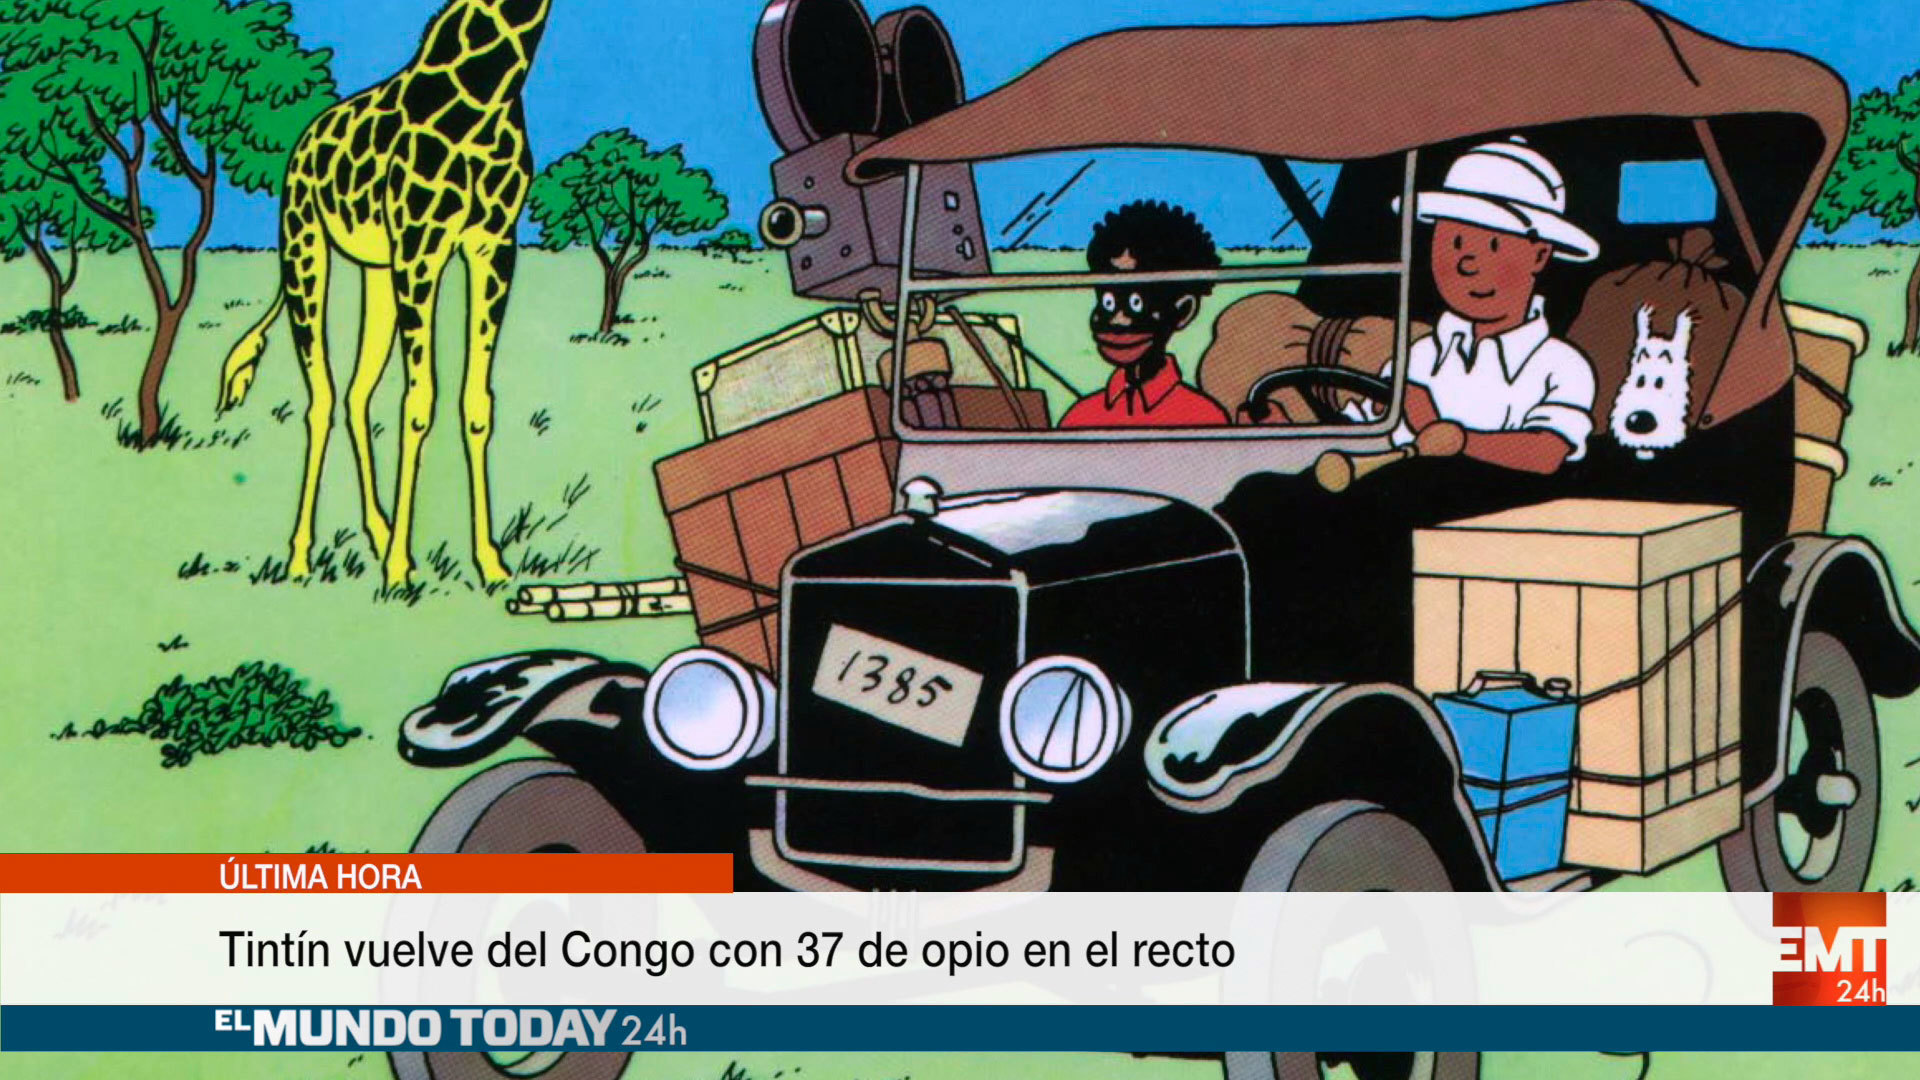 Temporada 1 Tintín vuelve del Congo con 37 bolas de opio en el recto